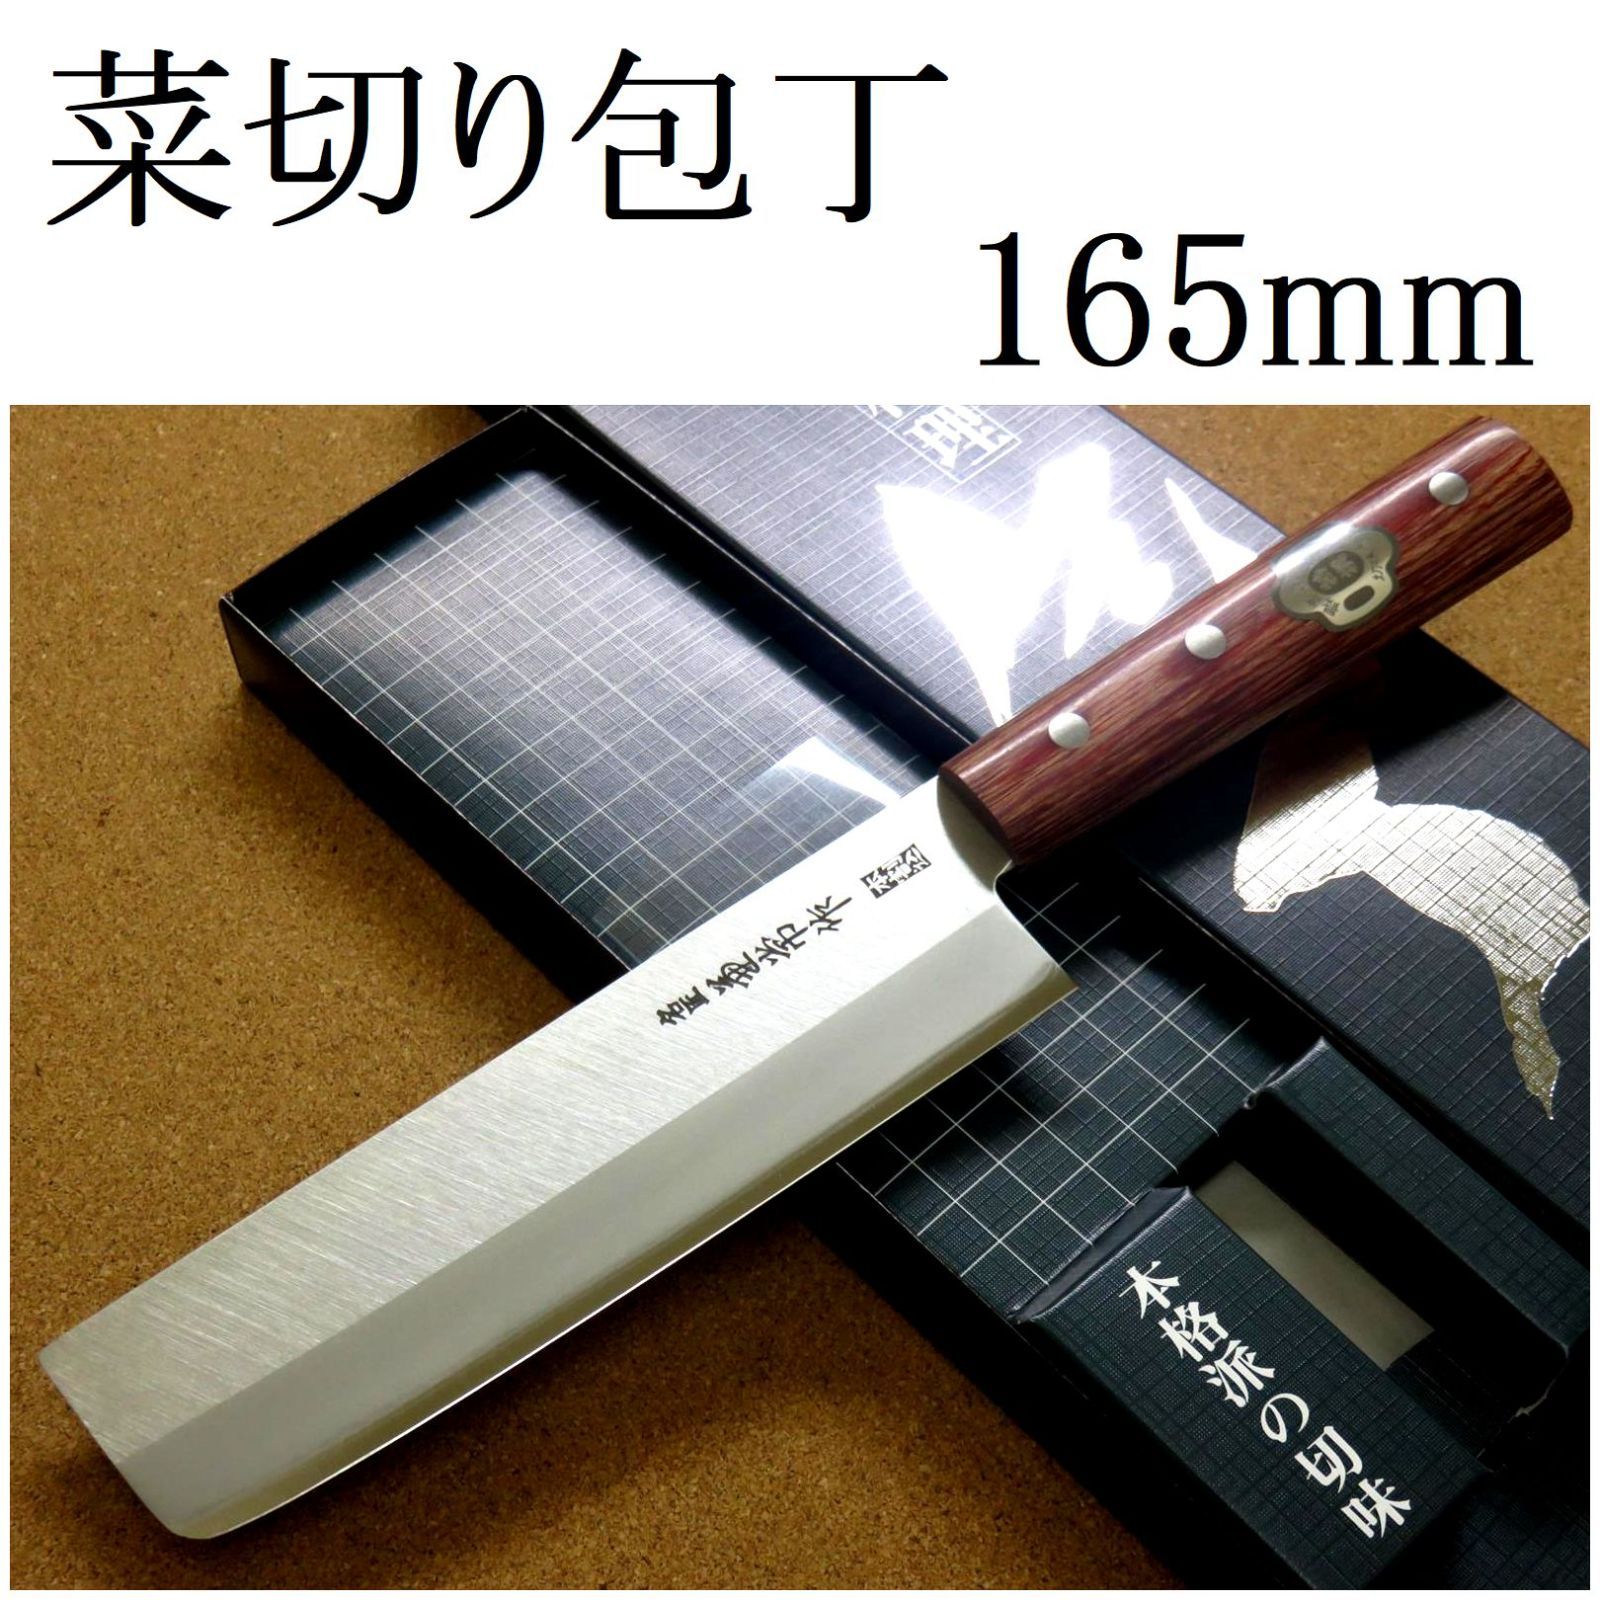 関の刃物 菜切包丁 16.5cm (165mm) 名匠 兼常作 本割込 武生 白紙2号 